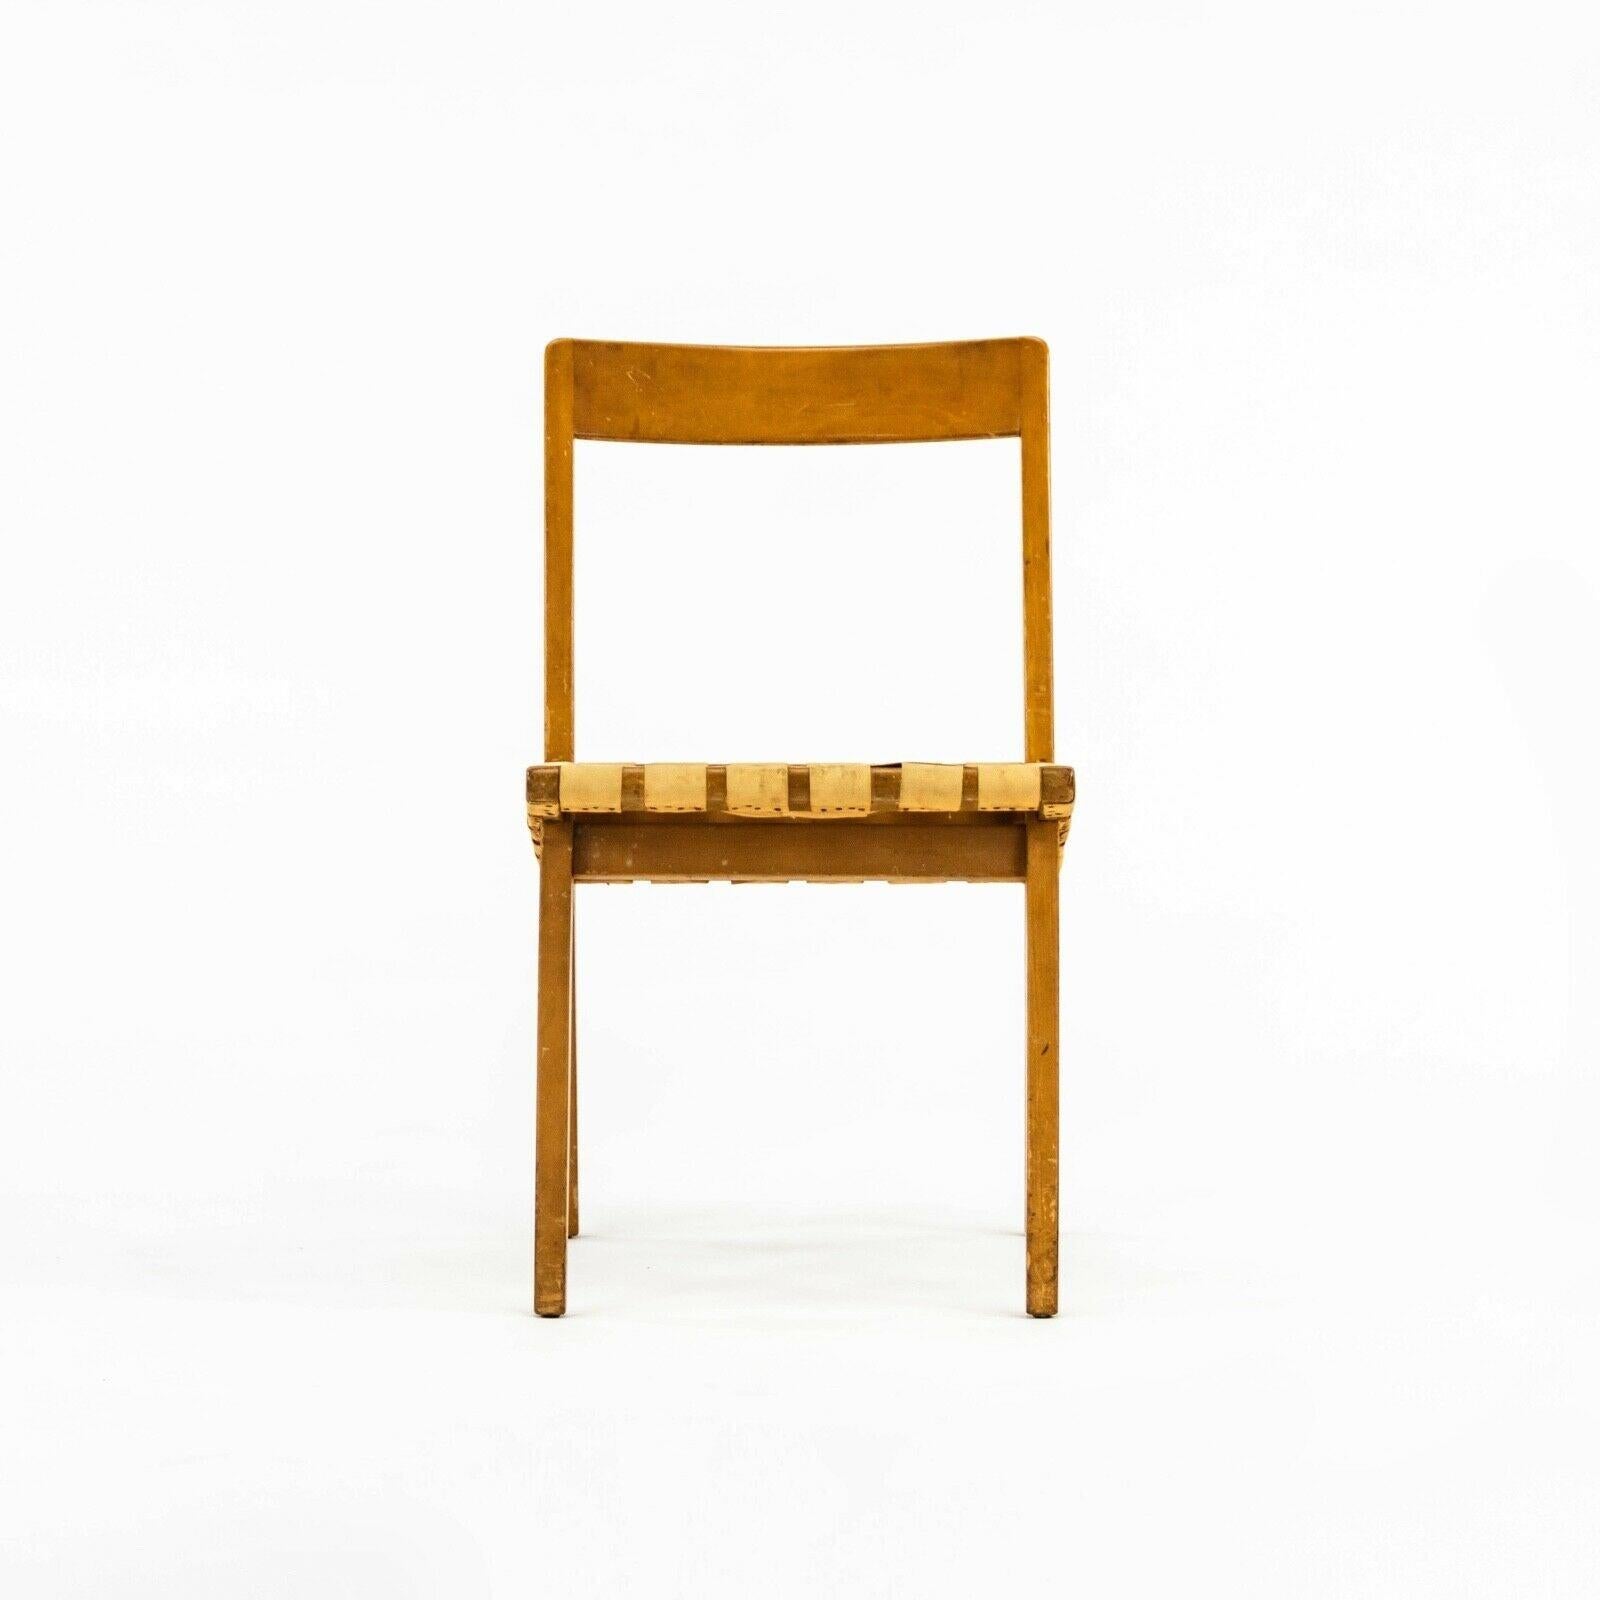 La vente porte sur une chaise de salle à manger originale Jens Risom for Knoll Associates 666 WSP, vers les années 1940. La chaise est en superbe état d'origine avec quelques traces de patine et d'usure sur l'assise. Le cadre en bois est en très bon